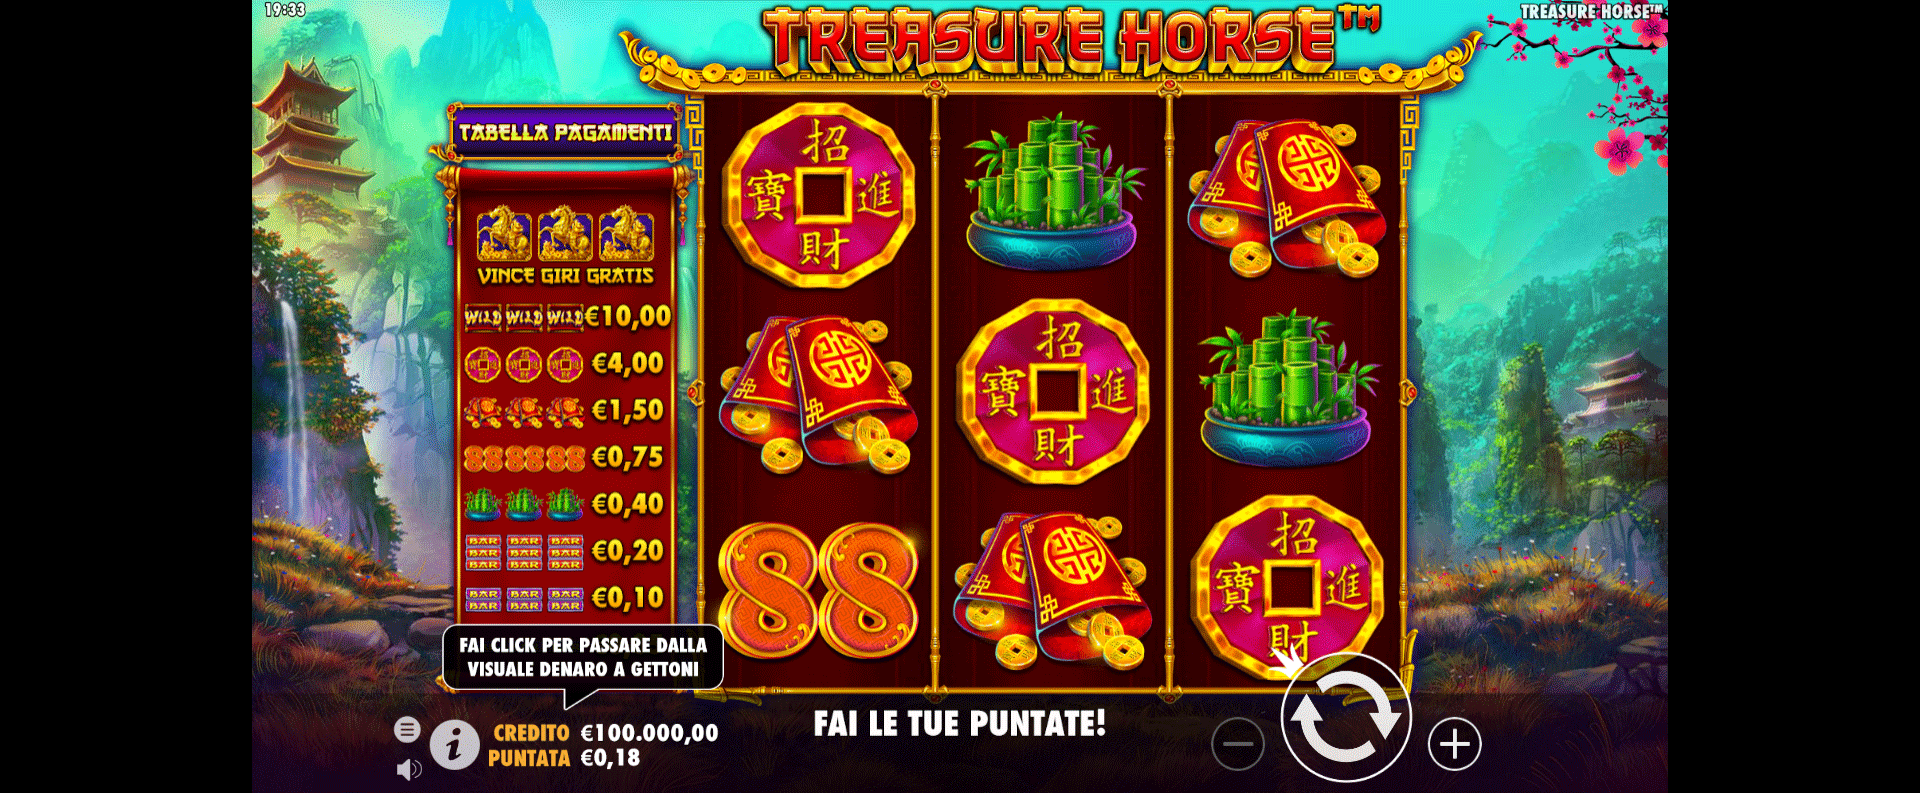 griglia del gioco slot machine treasure horse